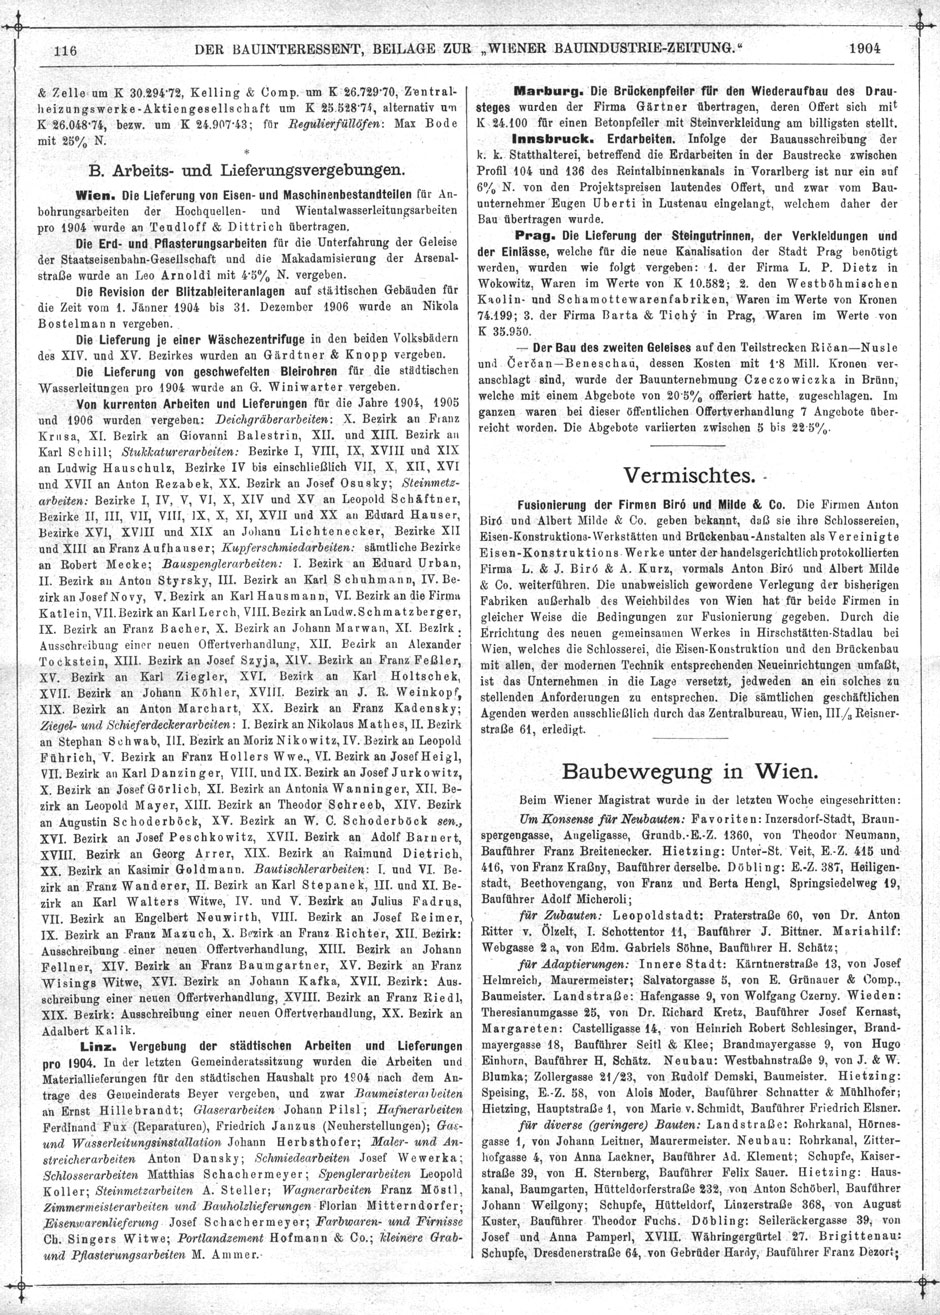 Wiener Bauindustrie-Zeitung 1903-04, Beilage Der Bauinteressent